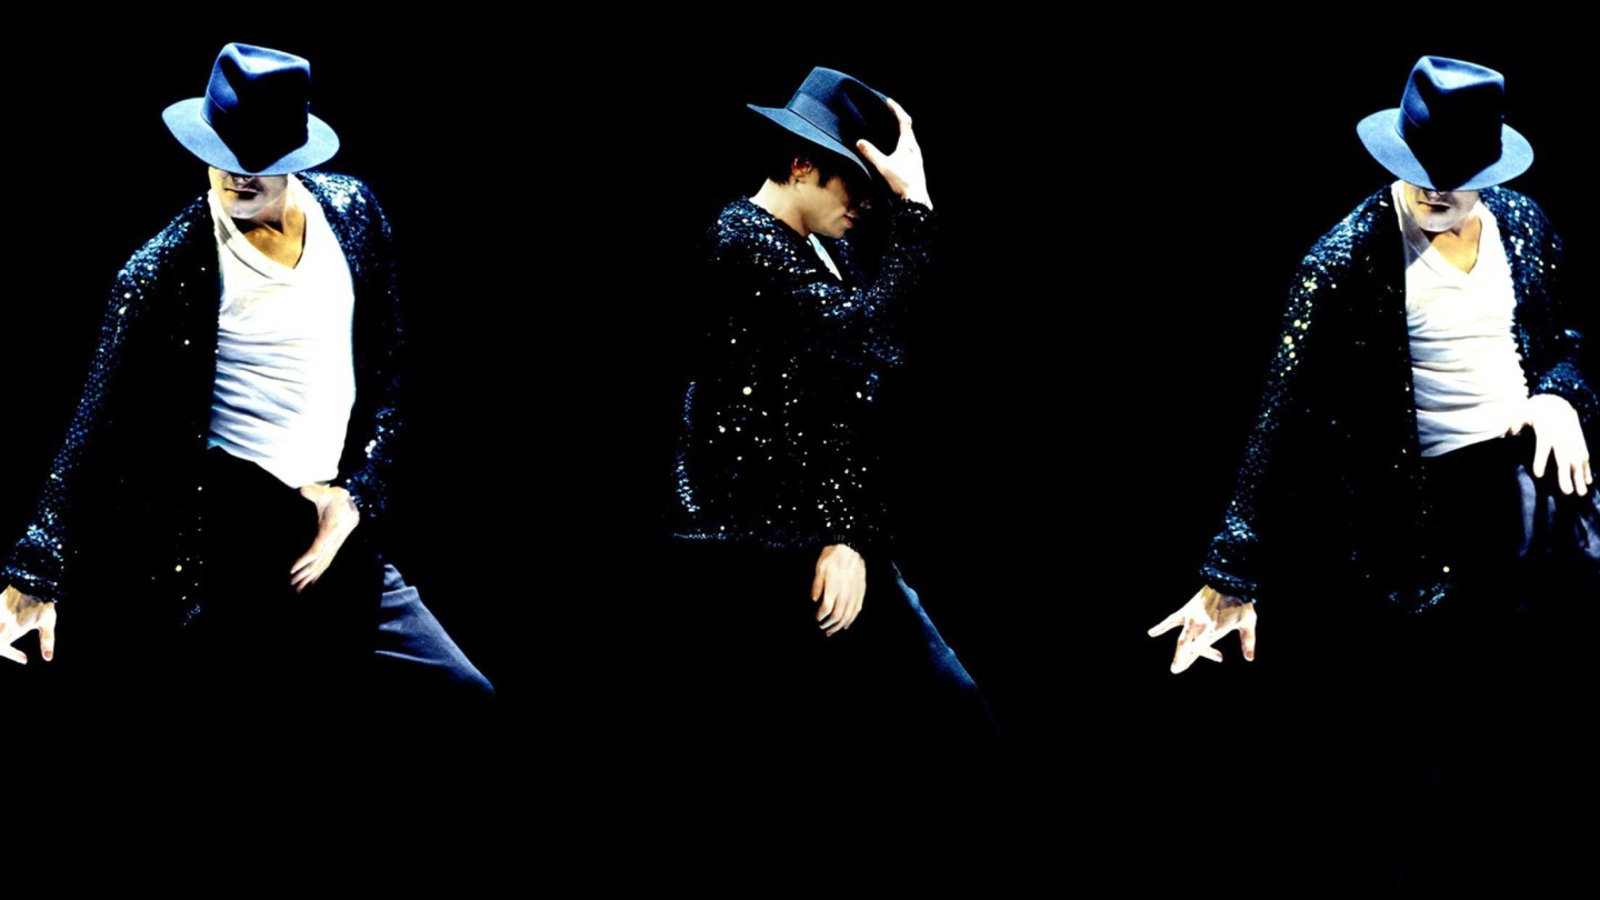 Michael Jackson wallpaper 1600x900